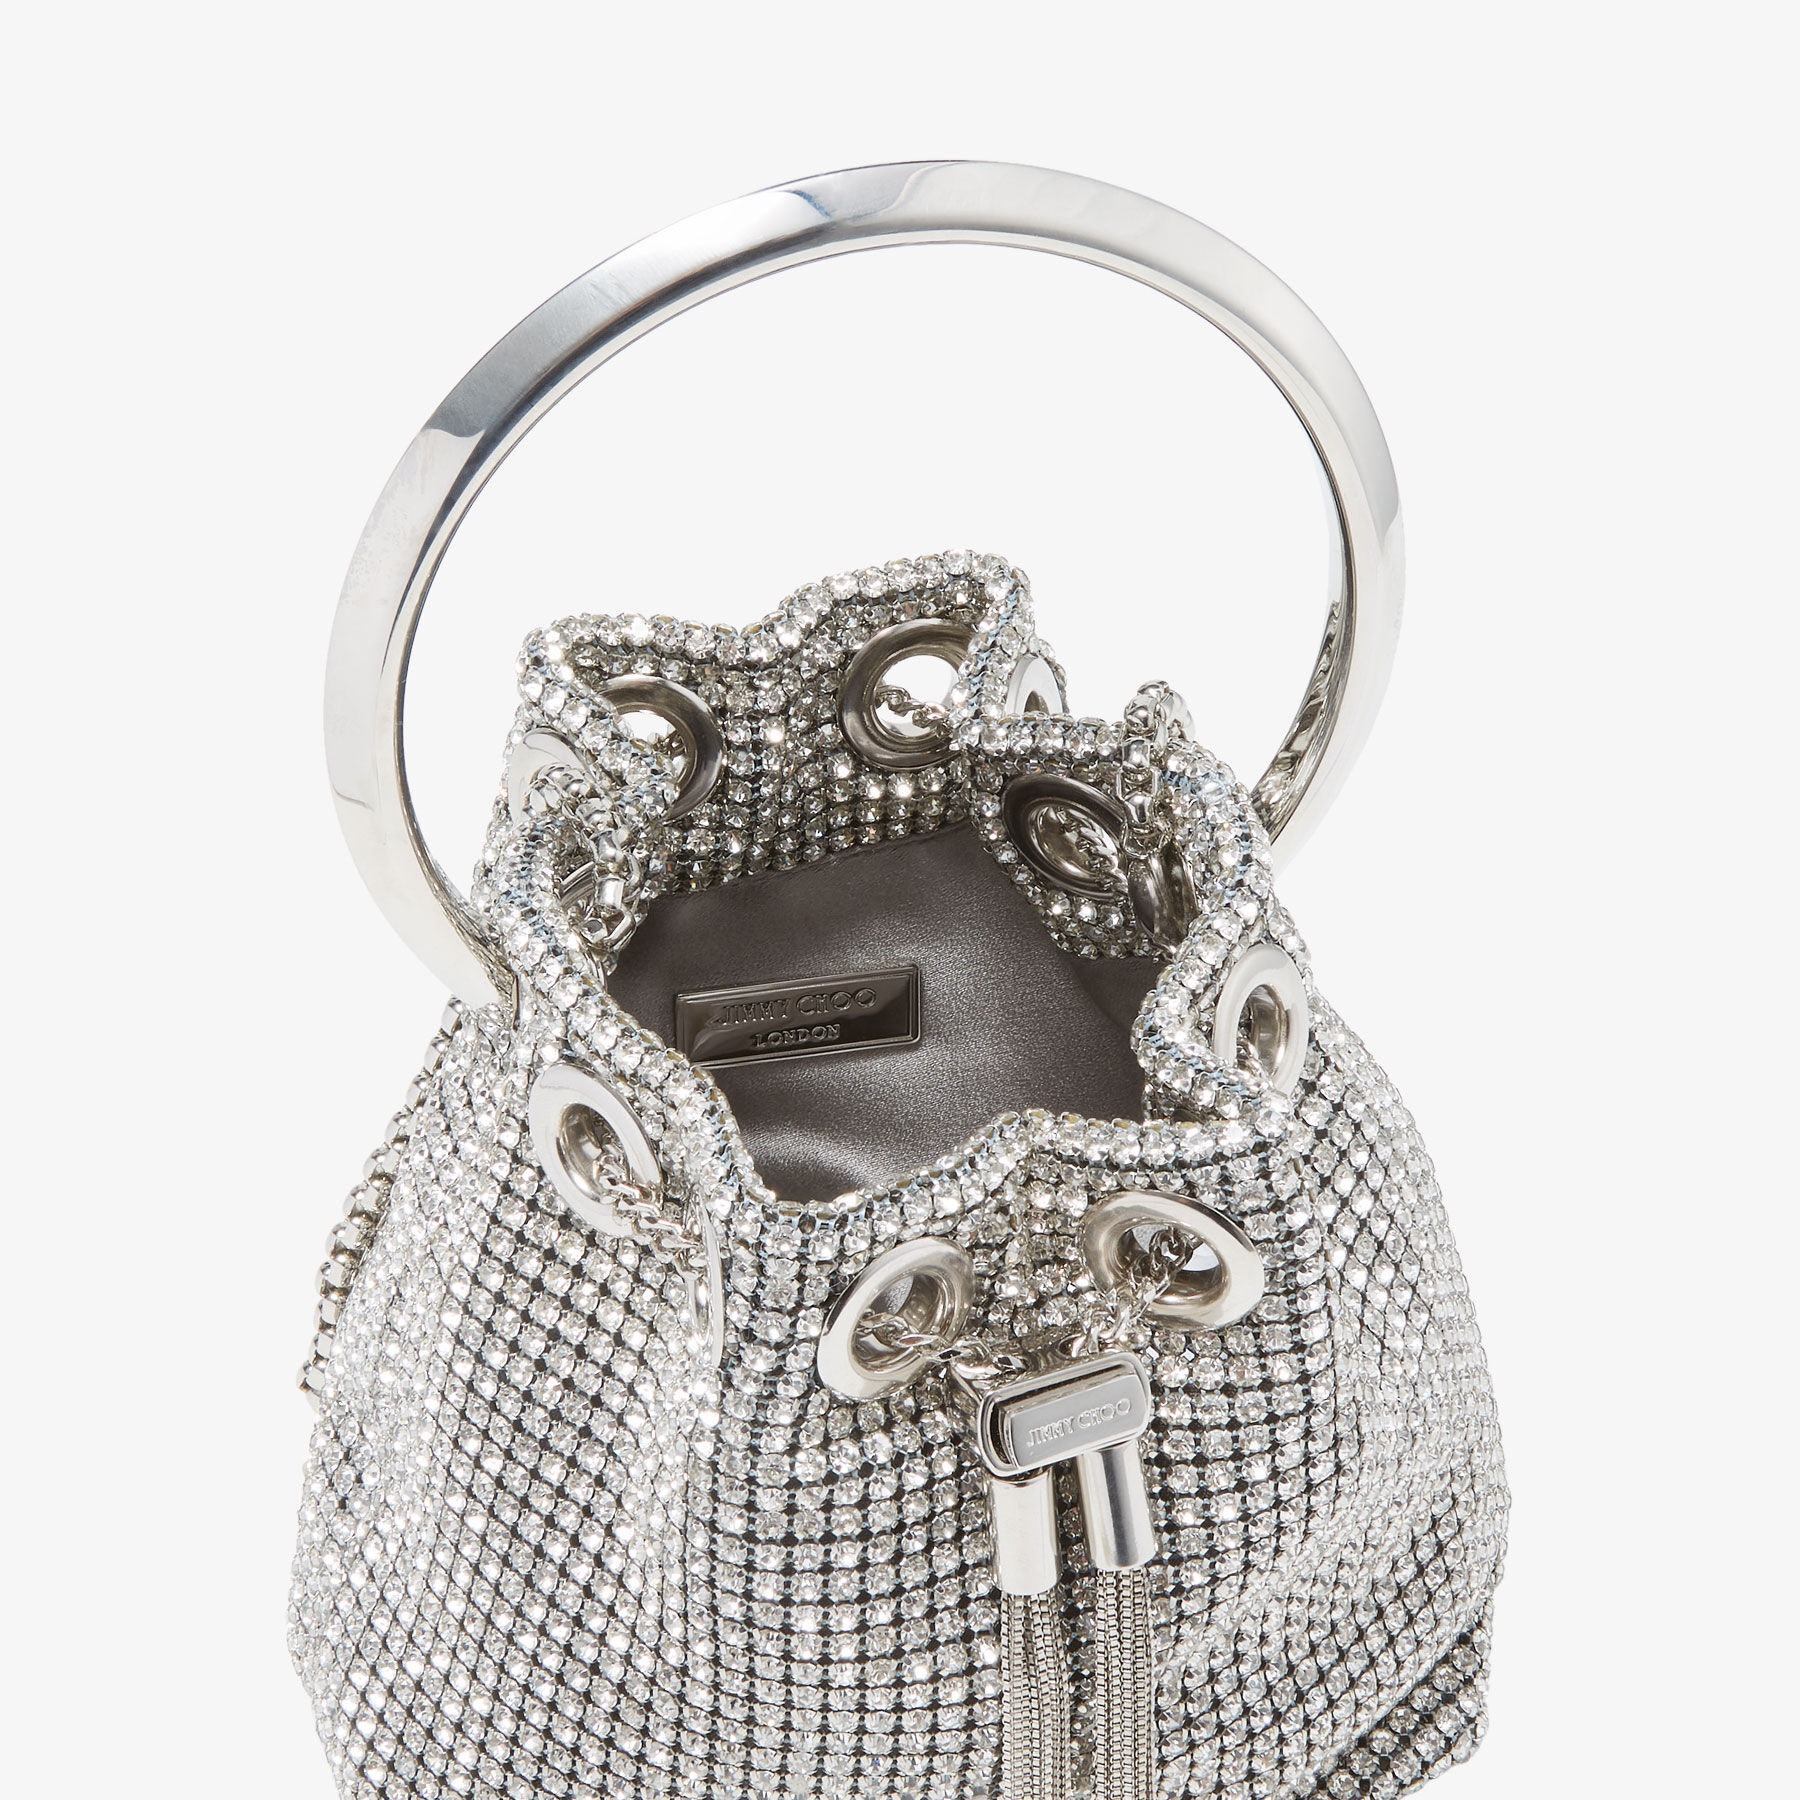 Micro Bon Bon
Silver Crystal Mesh Bag with Crystal Handle - 5